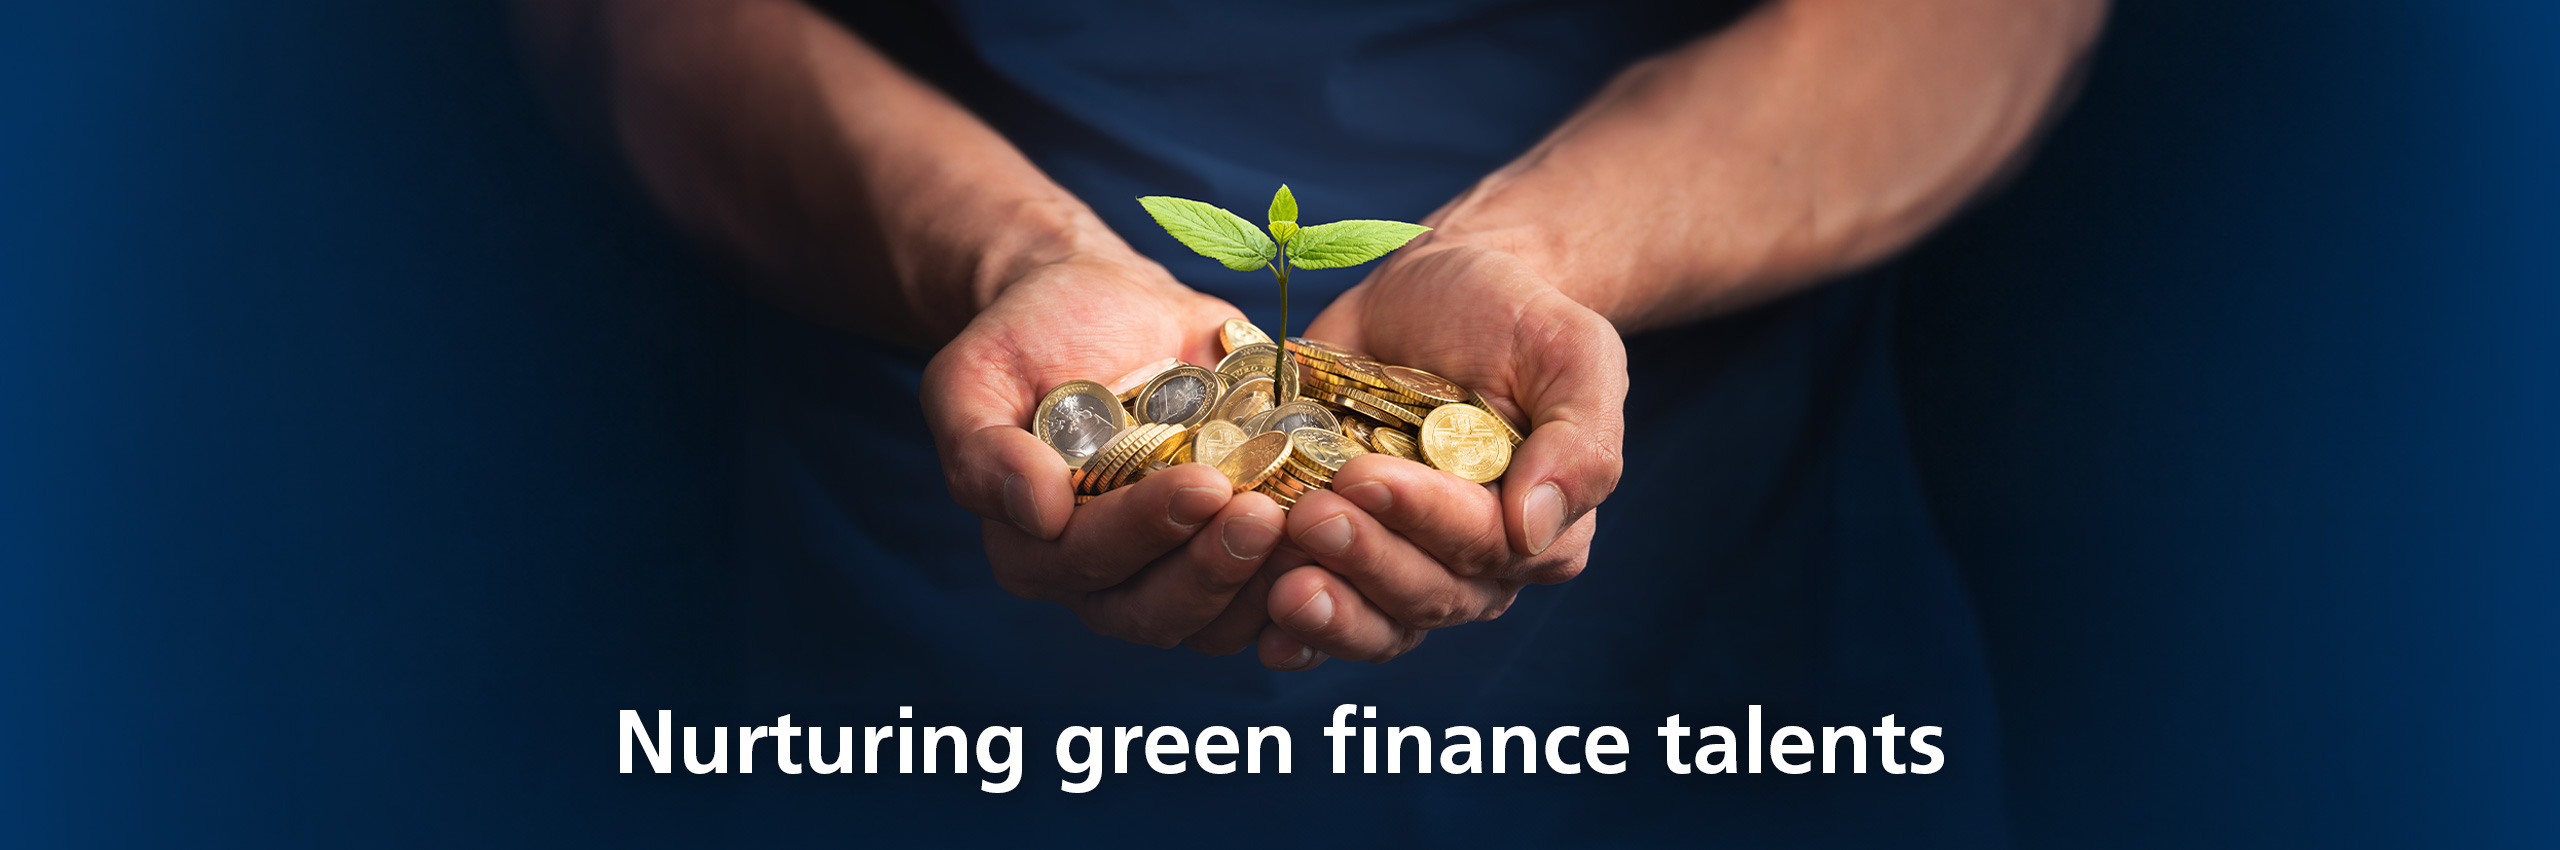 Nurturing green finance talents